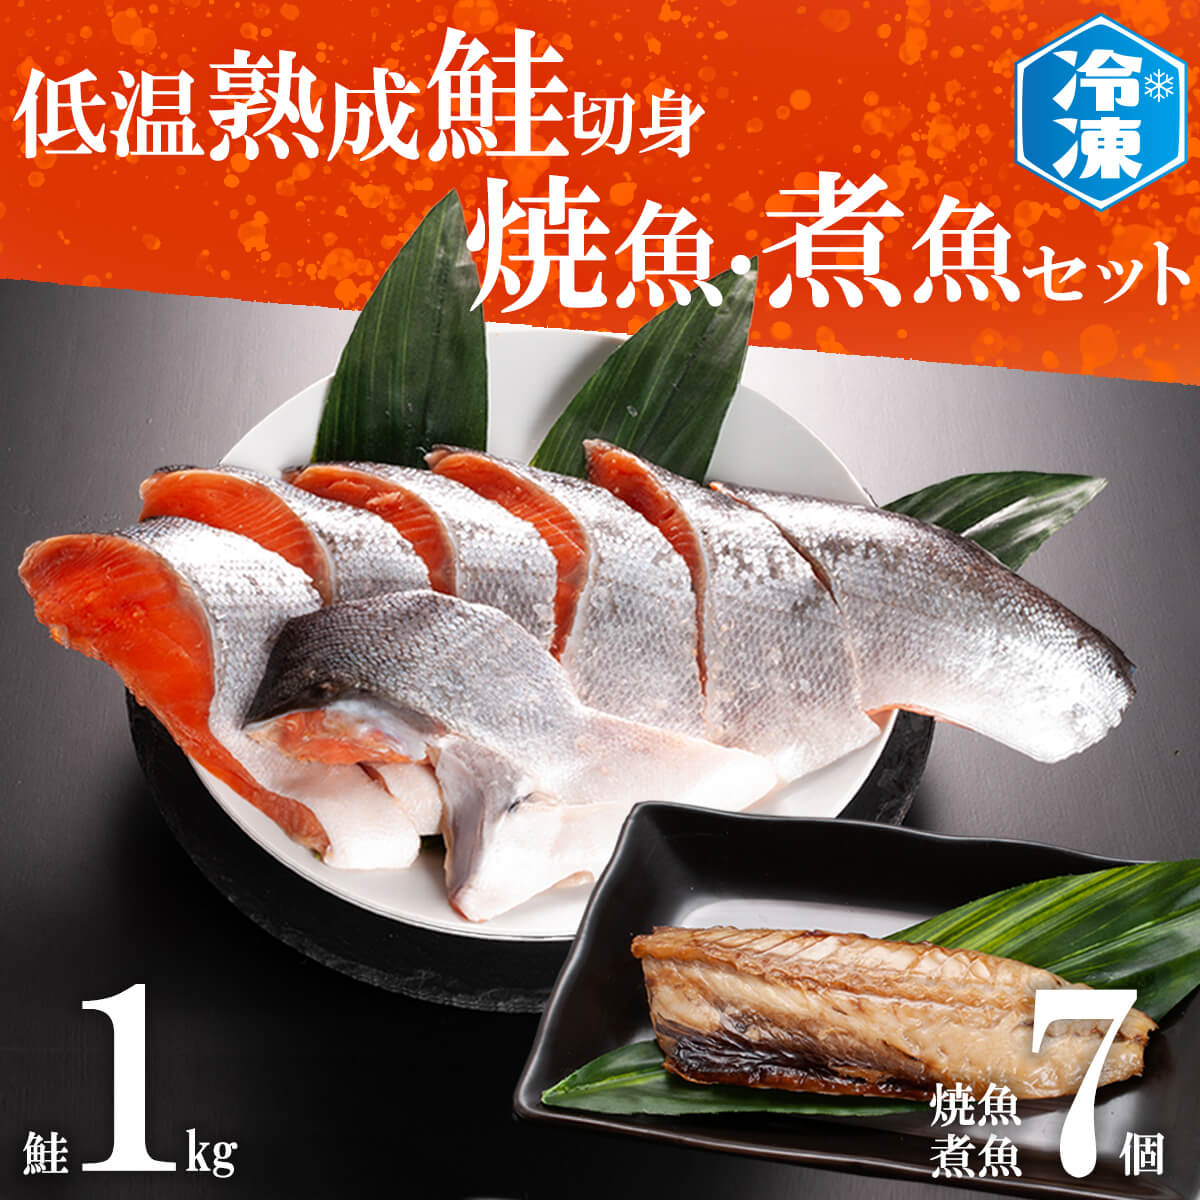 冷凍　1kg　さかな　赤魚　切身（茨城県大洗町）　切り身　いわし　ほっけ　煮魚　さば　鮭　焼魚　魚　7パックセット　低温熟成鮭切身　ふるさと納税サイト「ふるさとプレミアム」